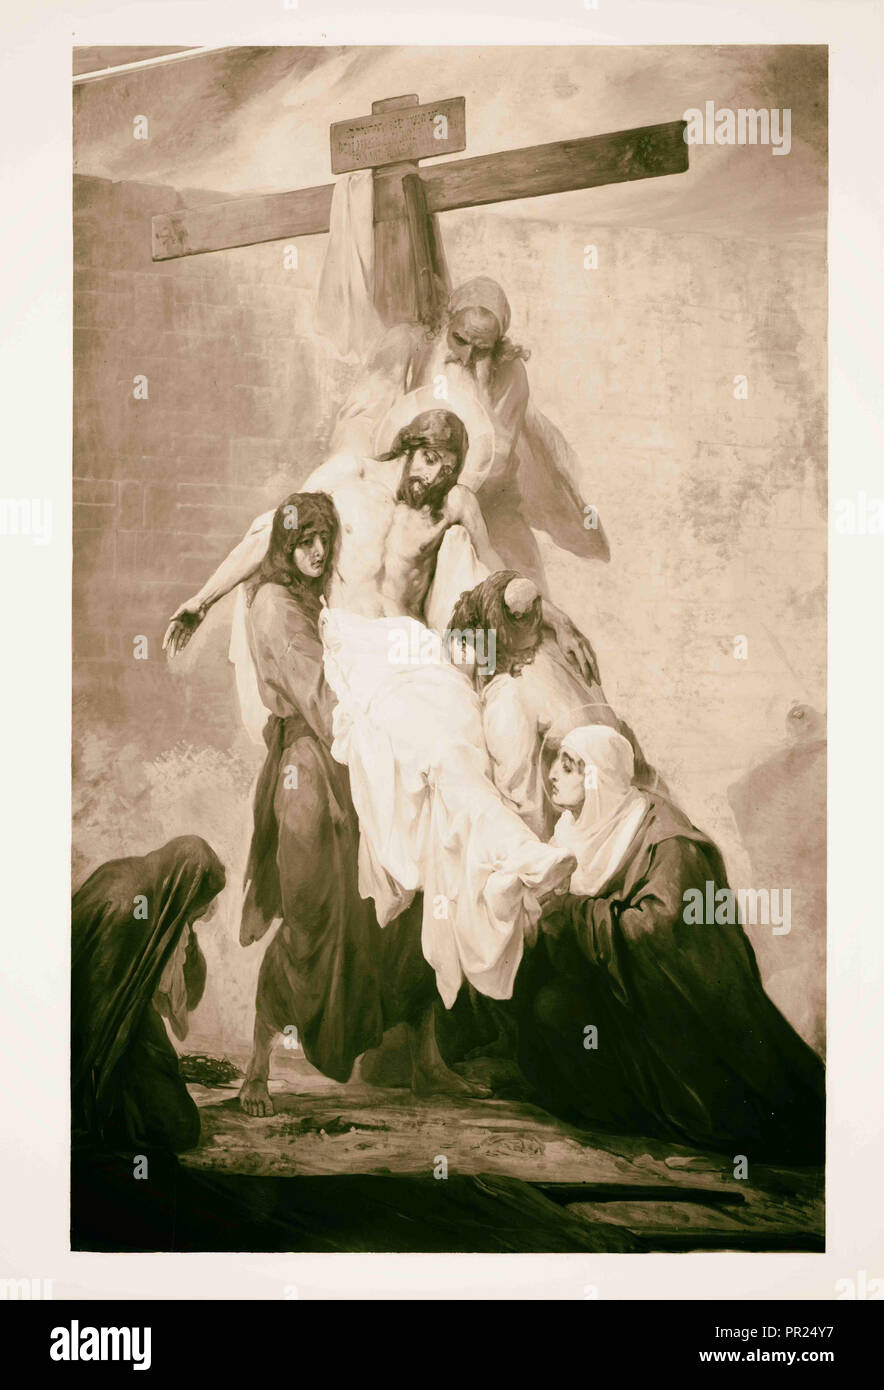 Einstellen von Bildern der Passion Christi, durch Kosheleff, in Russischen Hospiz, den Leib Christi aus dem Kreuz. 1898, Jerusalem Stockfoto